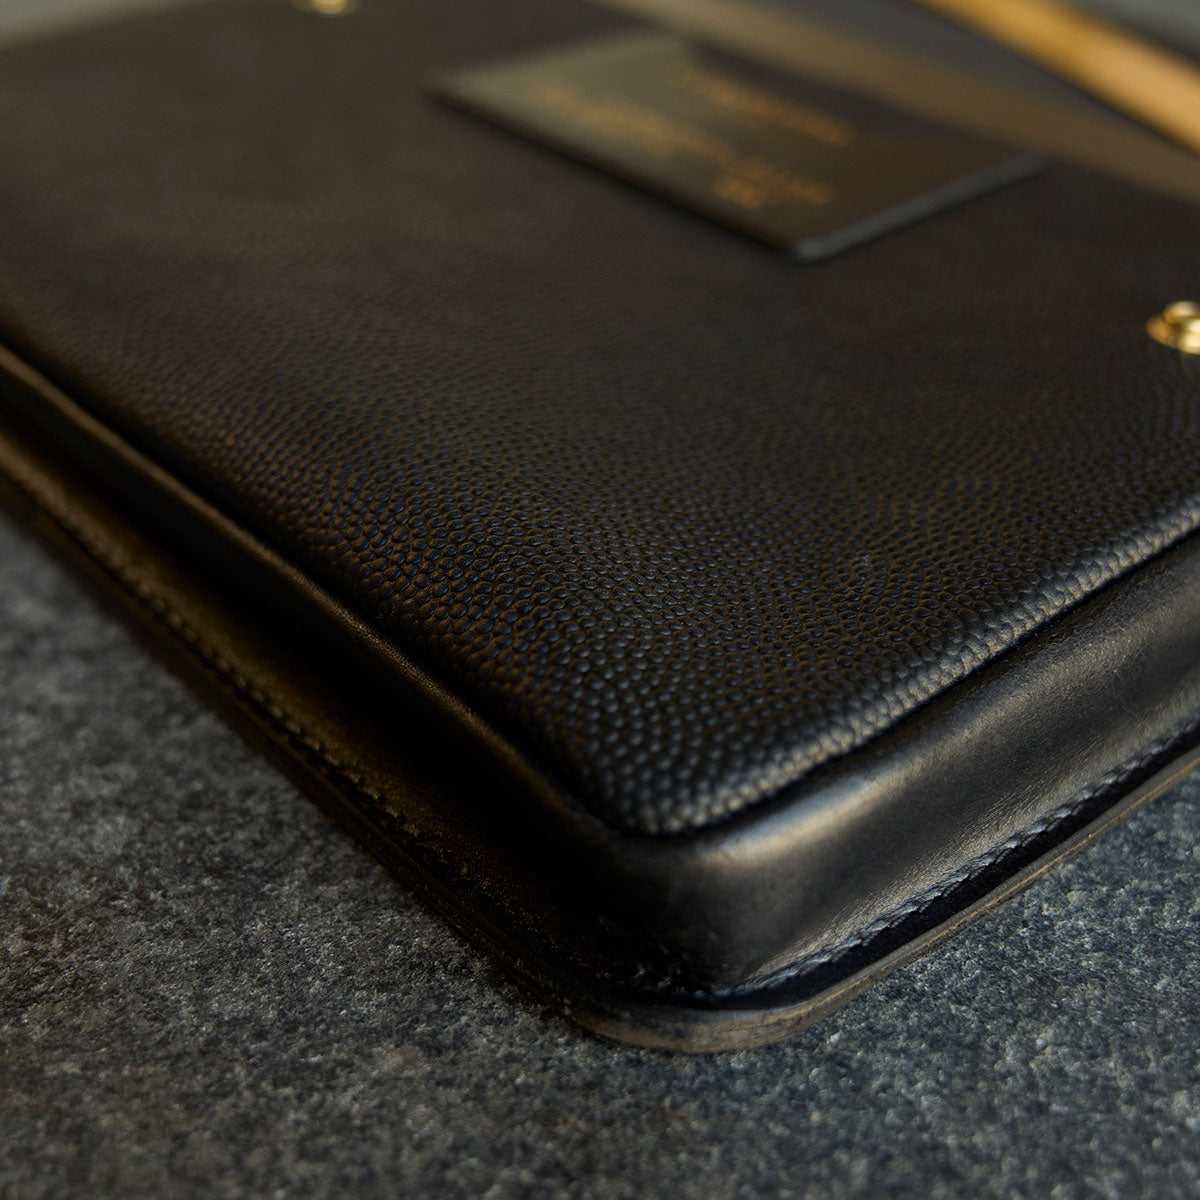 Louis Vuitton Folio iPad Mini Case - Black Tablet Cases